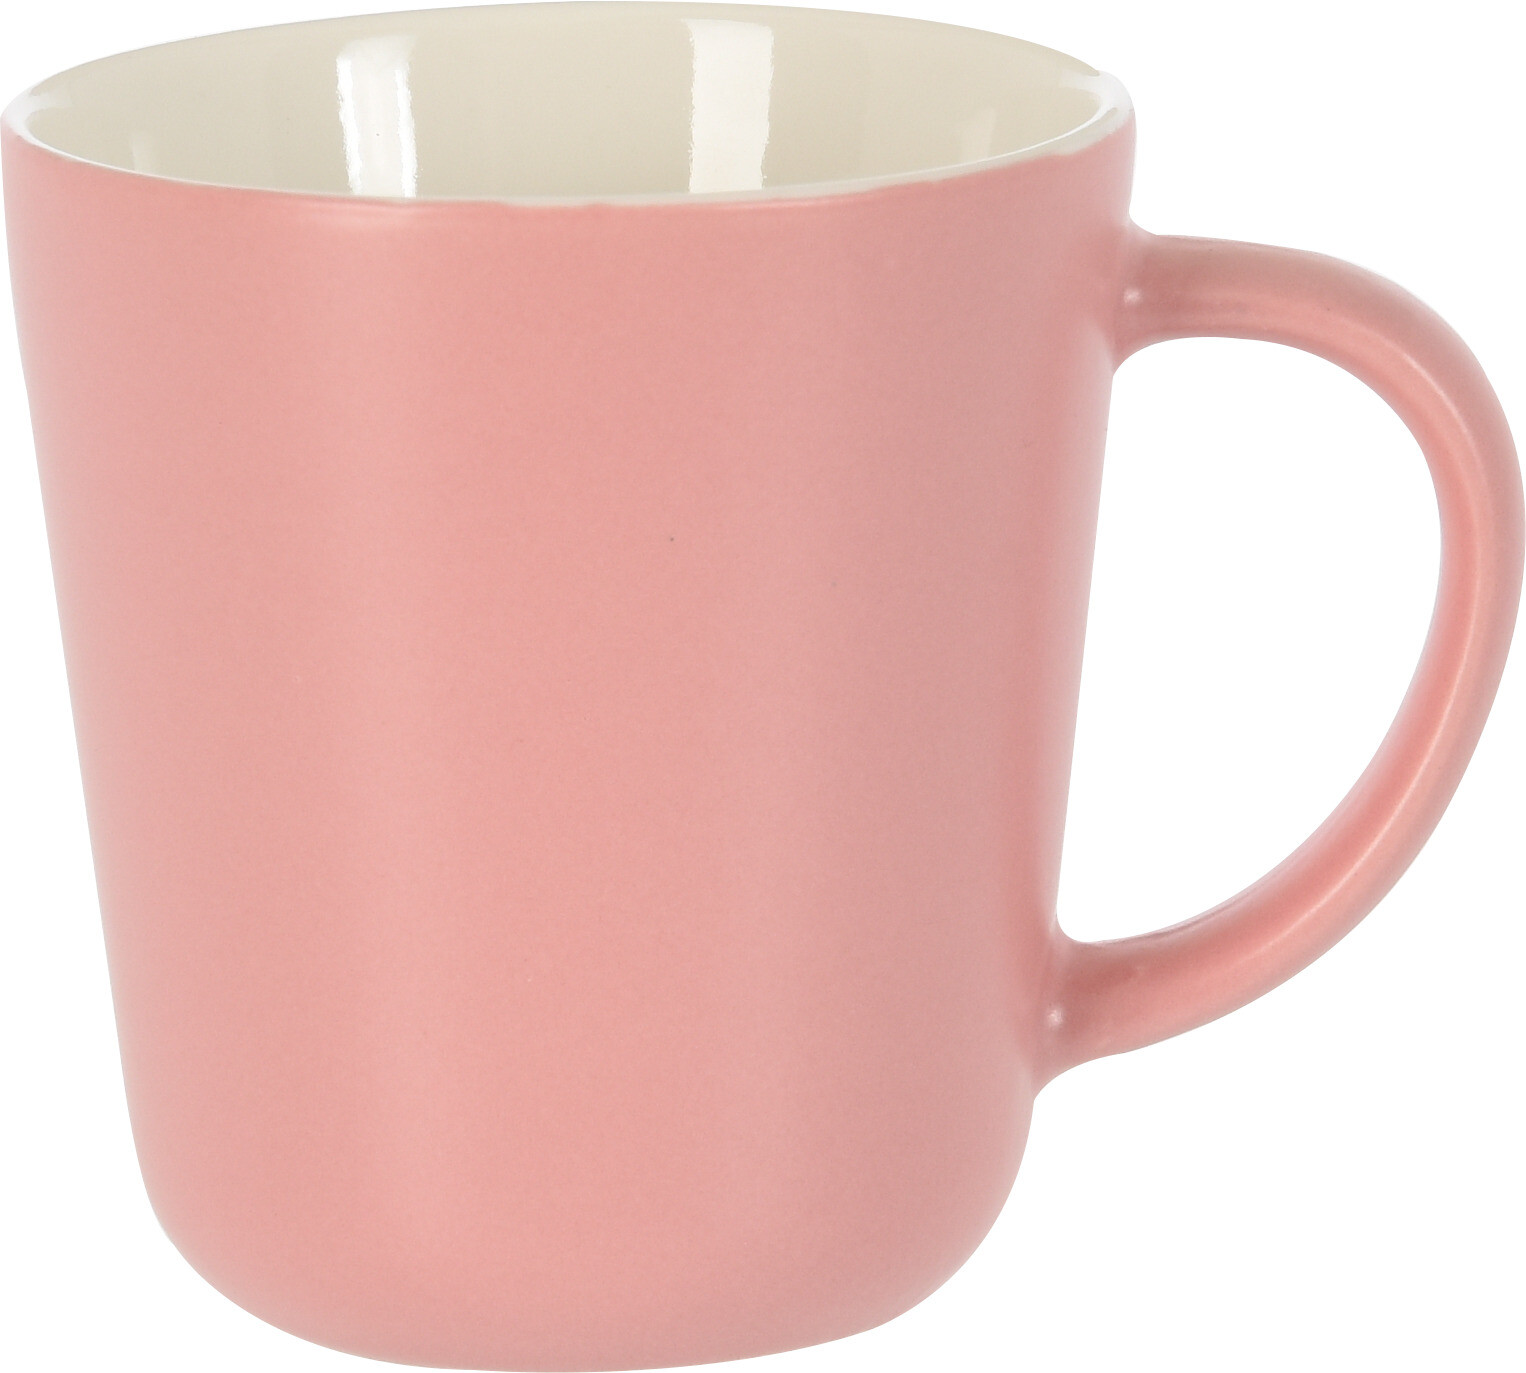 Mug en porcelaine 200 ml dans divers coloris au choix